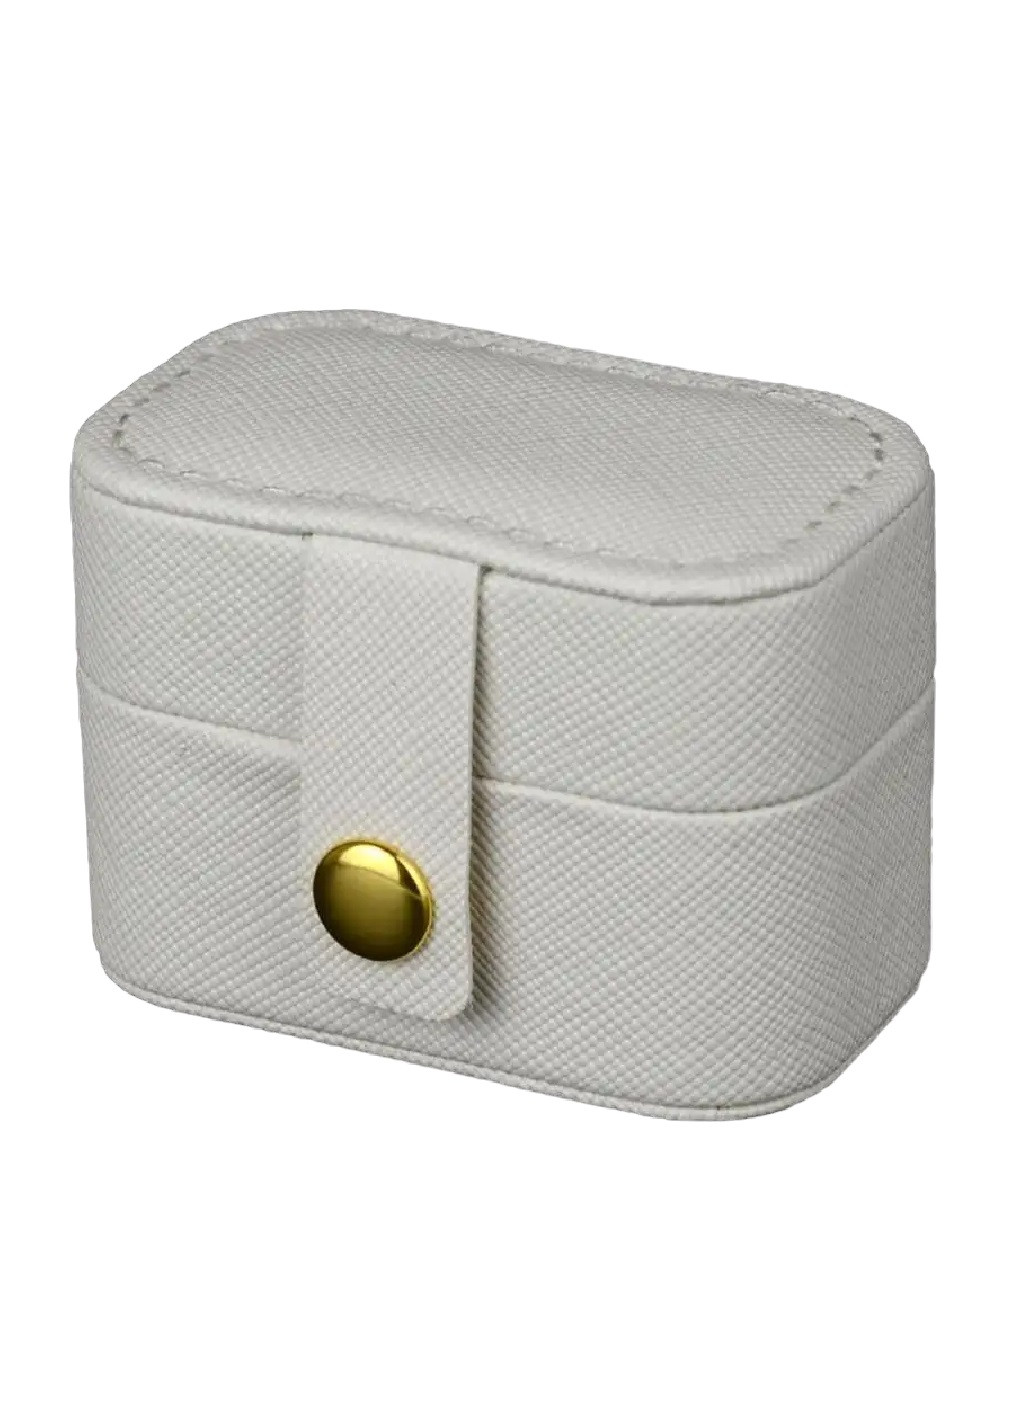 Шкатулка сундук органайзер коробка футляр для хранения украшений колец 6.5х4х4.5 см (474635-Prob) Белая Unbranded (259162211)